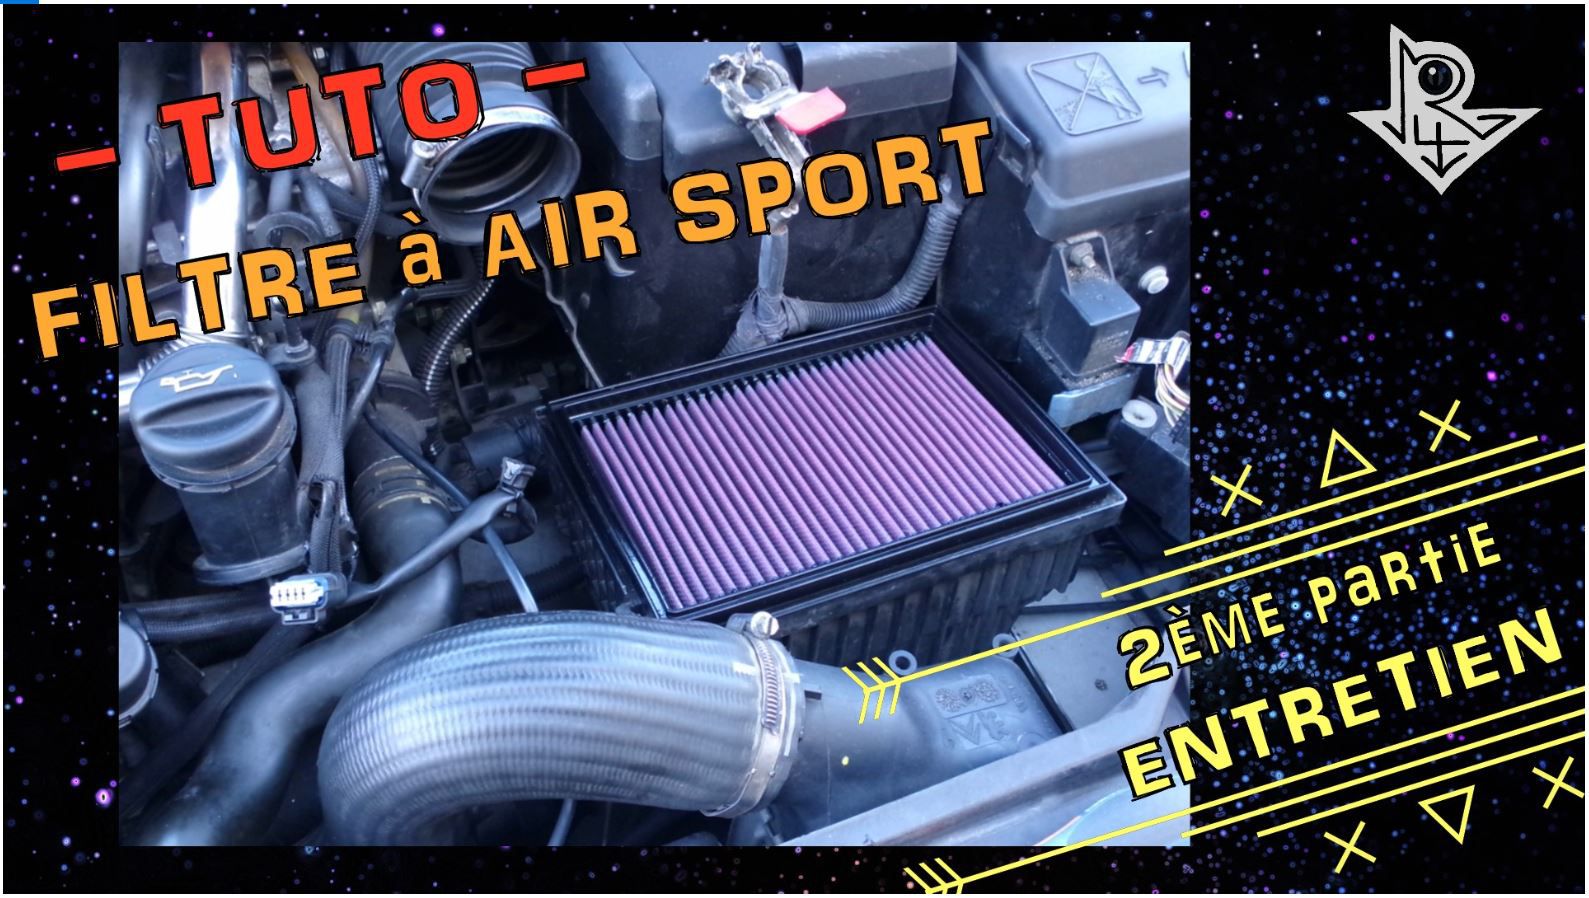 filtre air sport performance entretien moteur gagner puissance